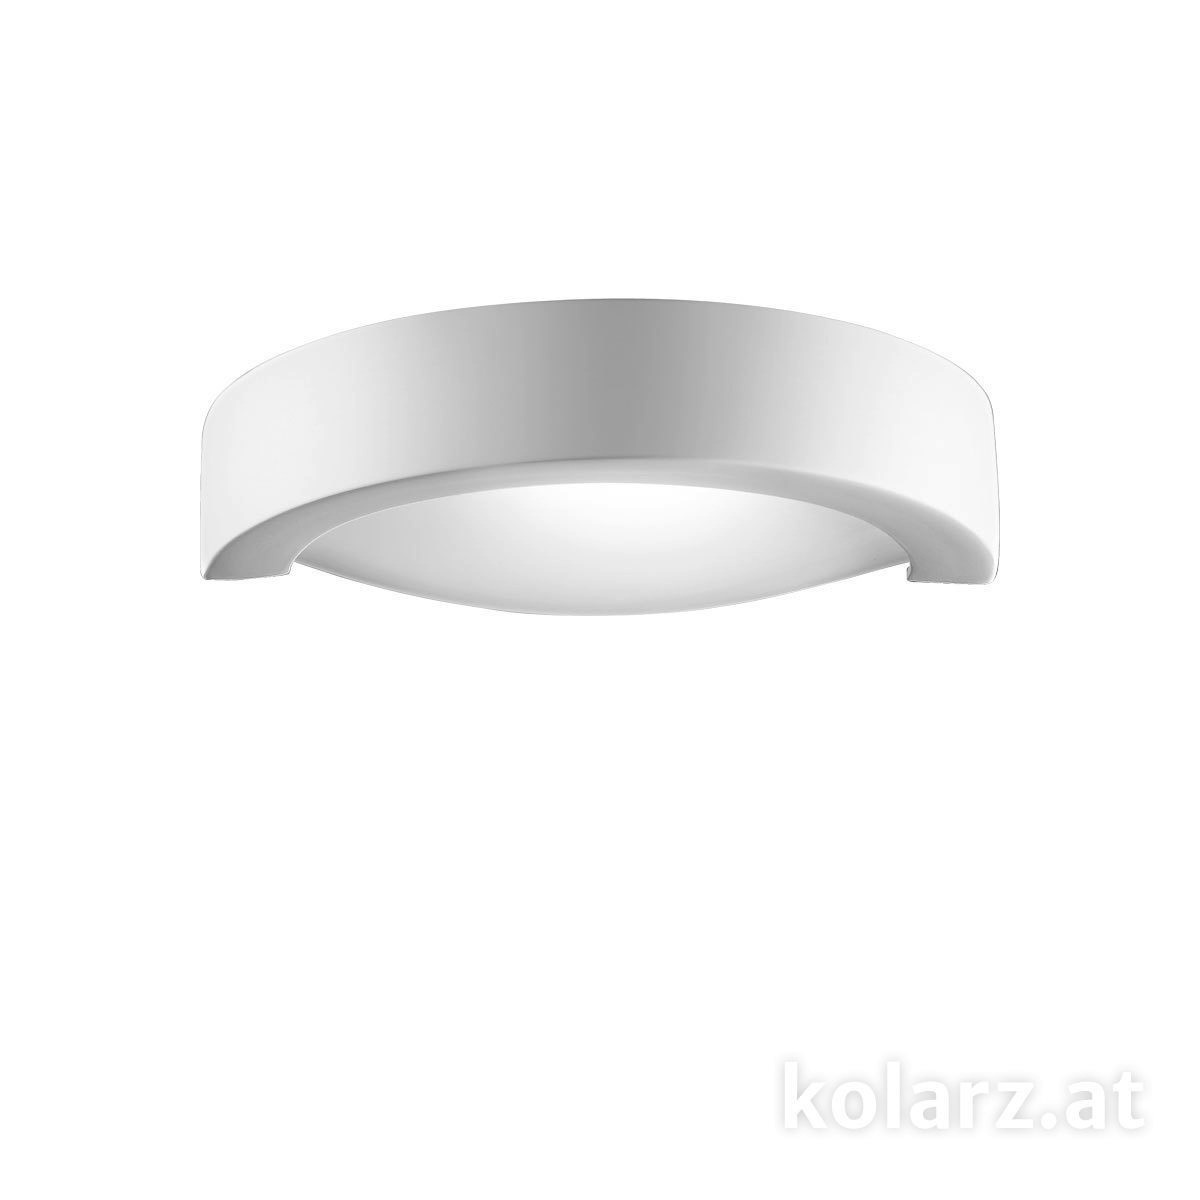 KOLARZ Leuchten Moderne Wandleuchten & Wandlampen fürs Bad von KOLARZ Leuchten Wandleuchte CASABLANCA 219.63.1